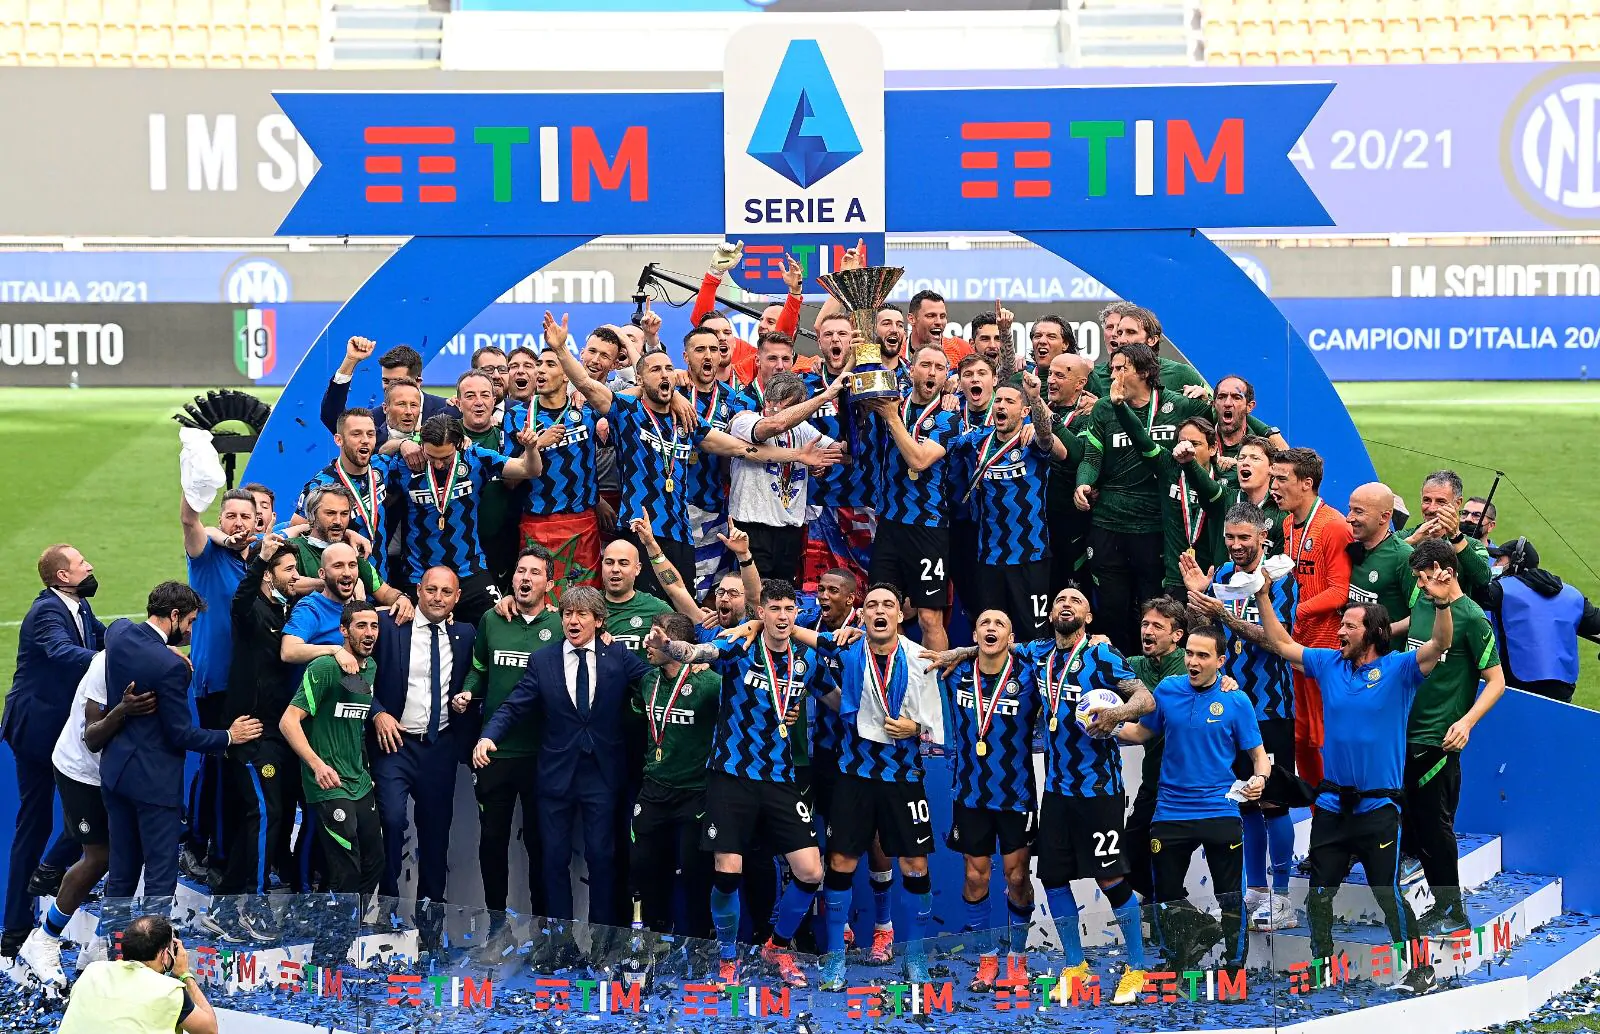 Bomba dell’ex Inter: “Torno in Serie A e ribalto i pronostici!”